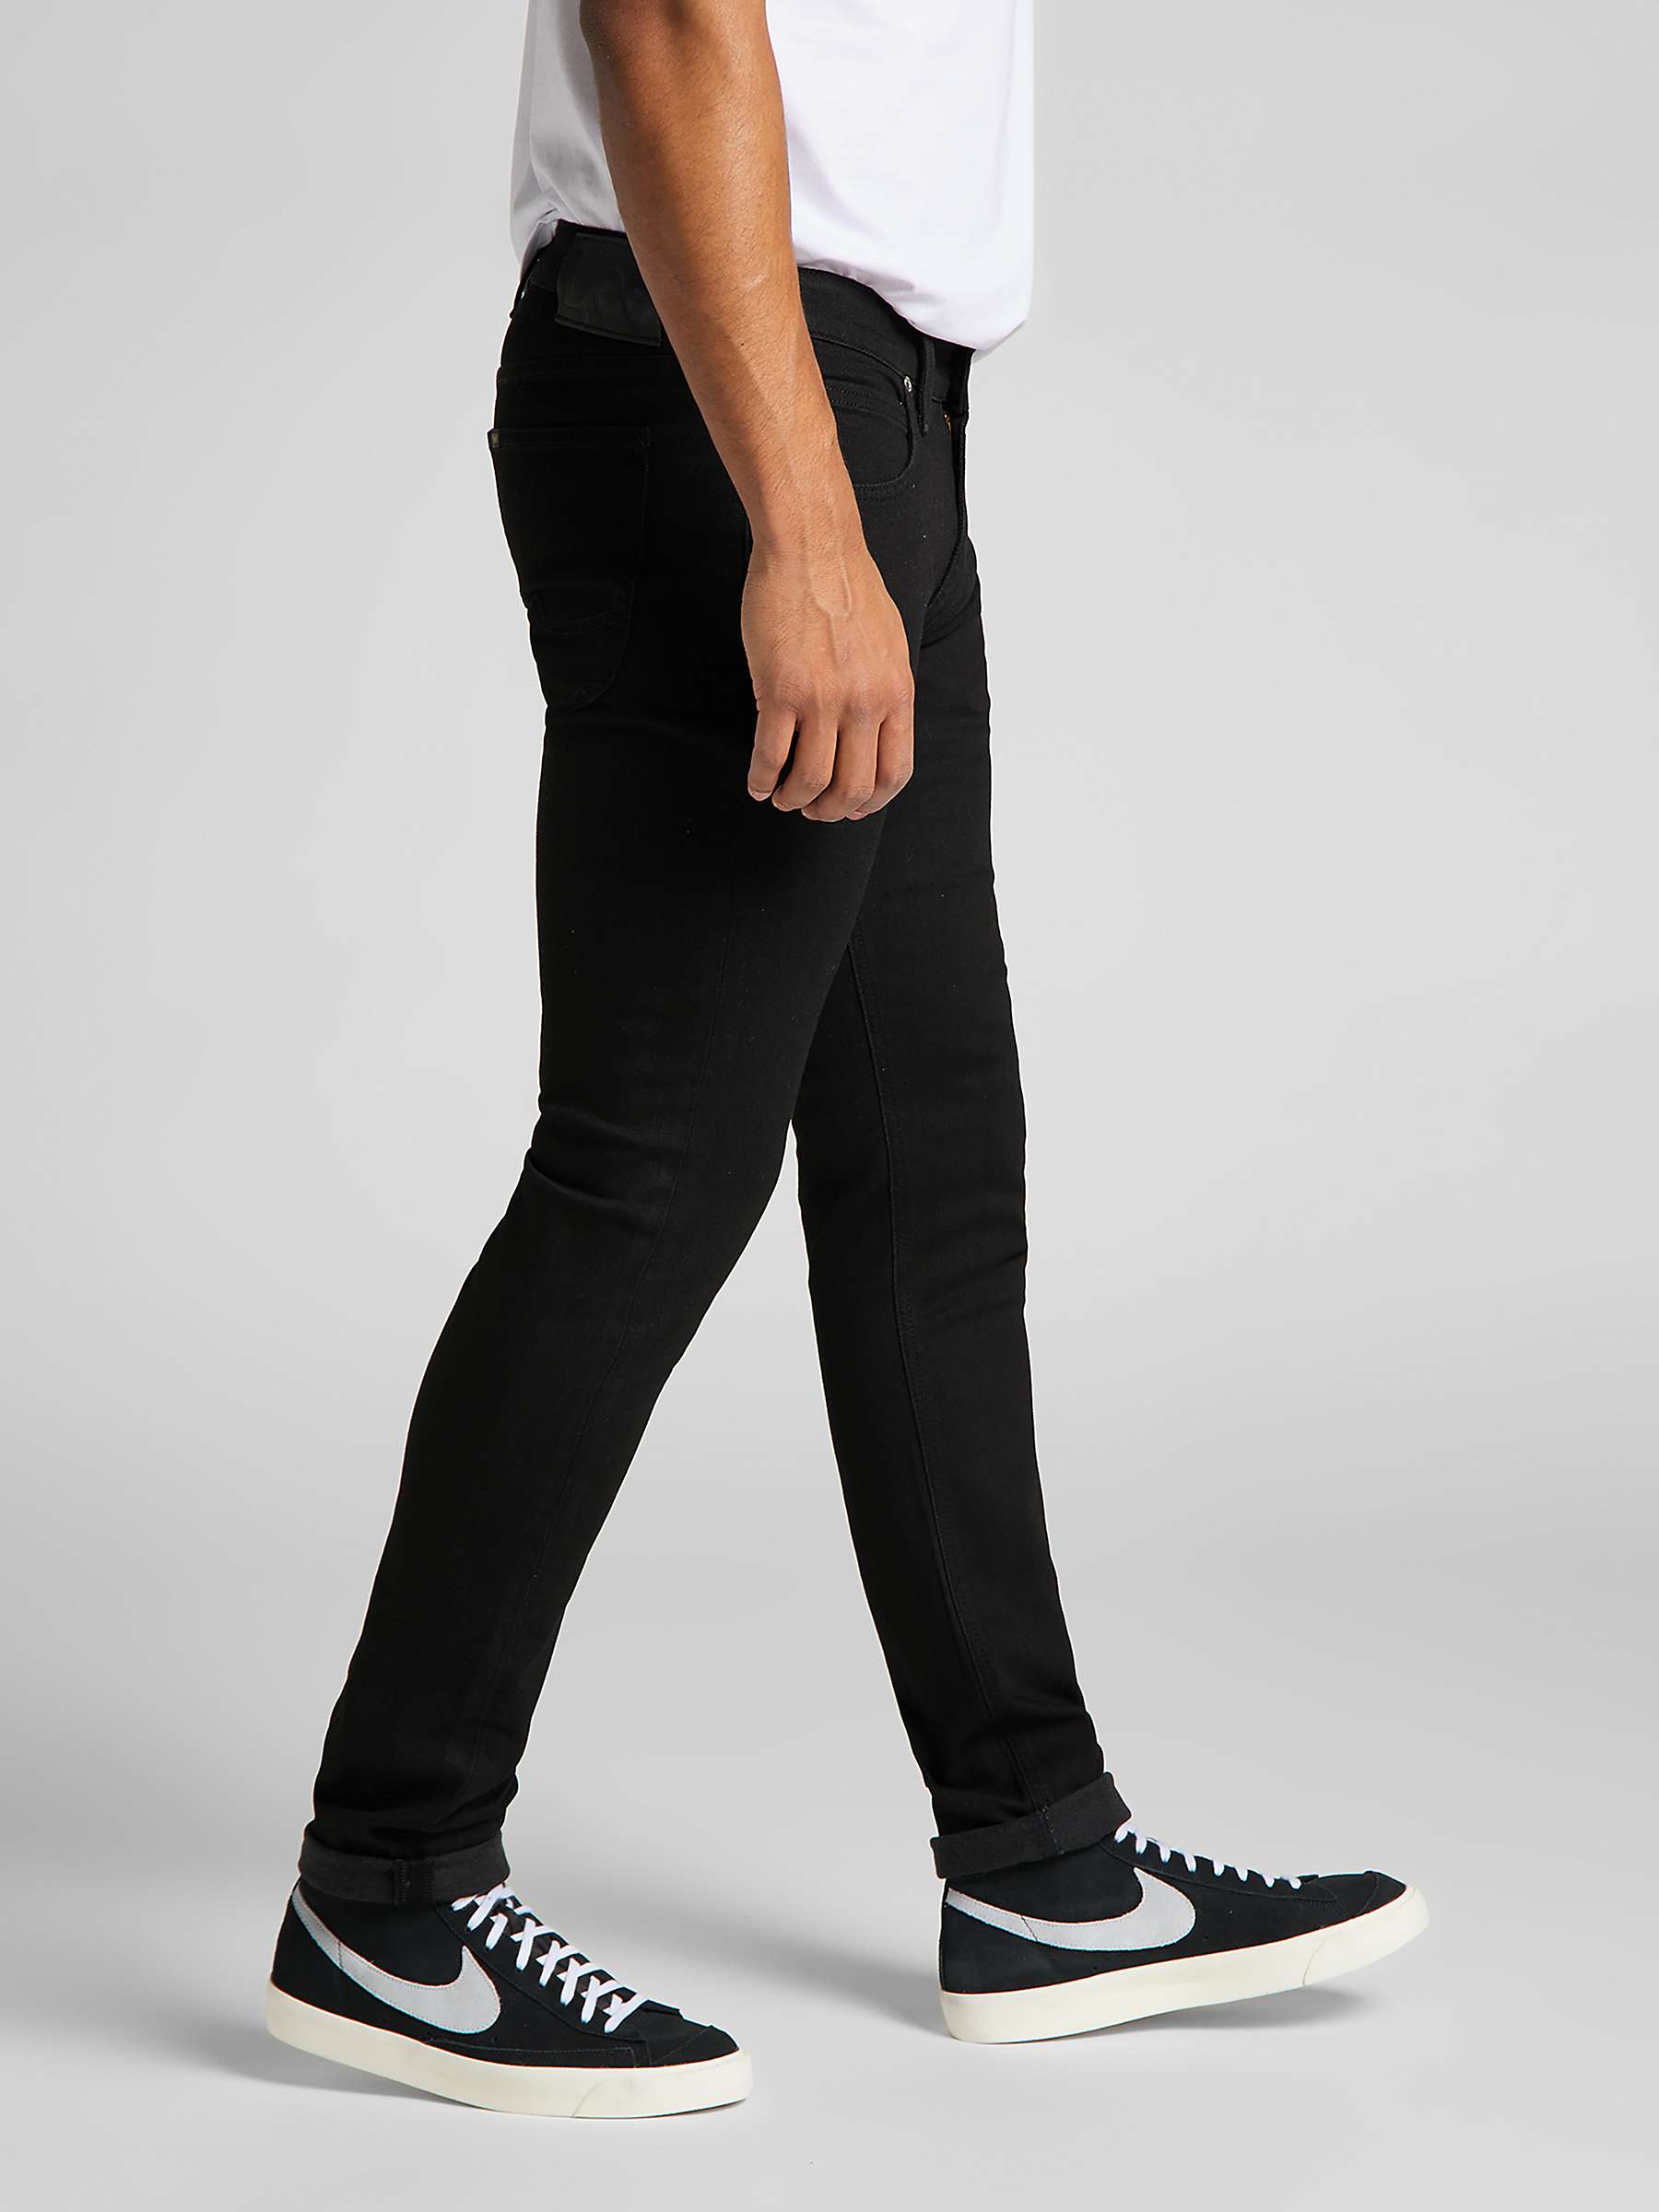 Buy Lee Luke Slim Fit Jeans, L719HFAE - Clean Black Online at johnlewis.com